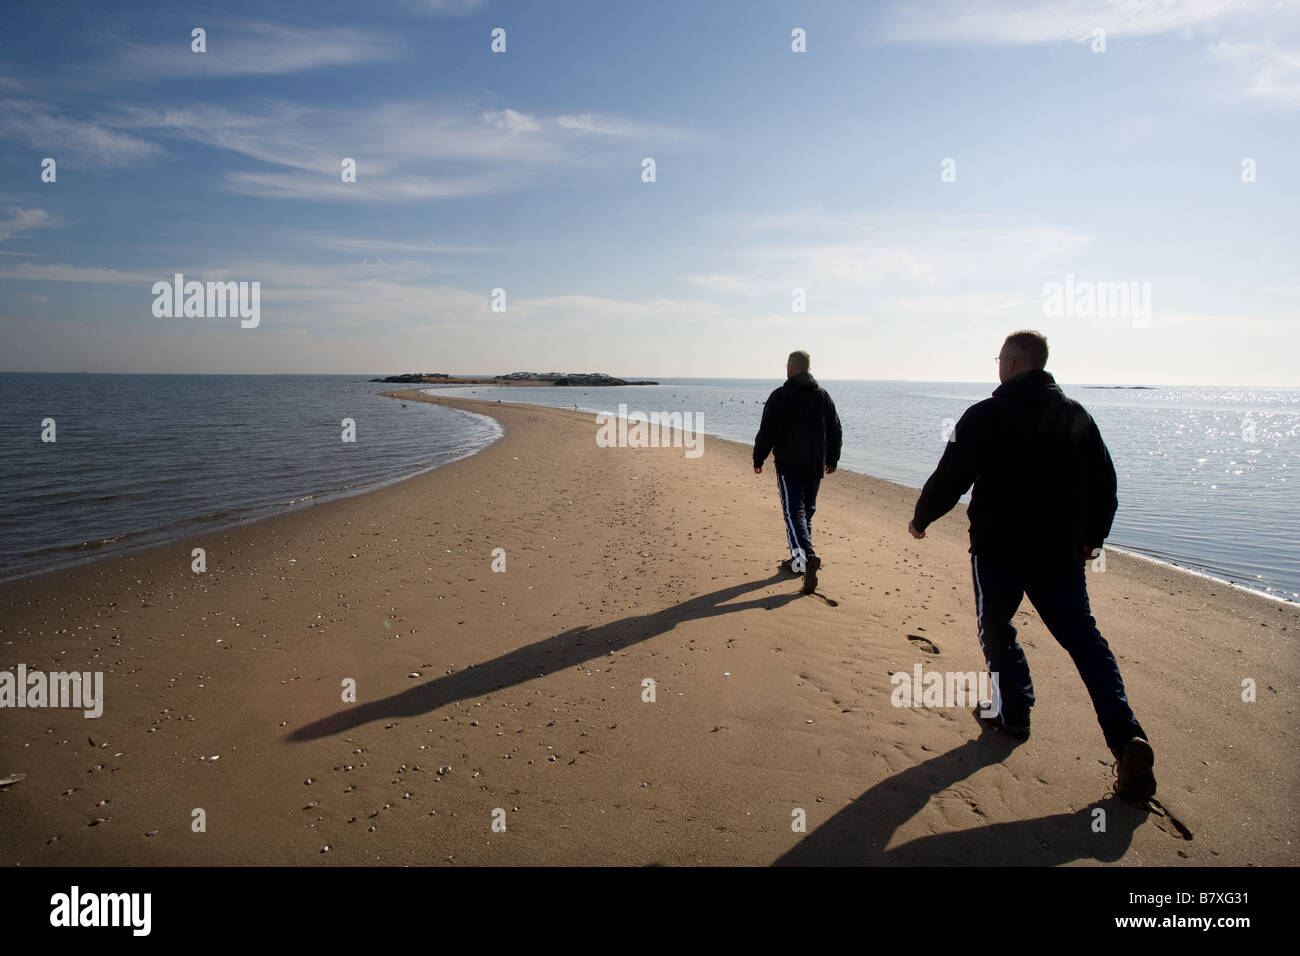 Eine Doppelbelichtung zeigt einen Mann zu Fuß entlang einer Sandbank in Richtung einer Insel mit dem Ozean Stockfoto